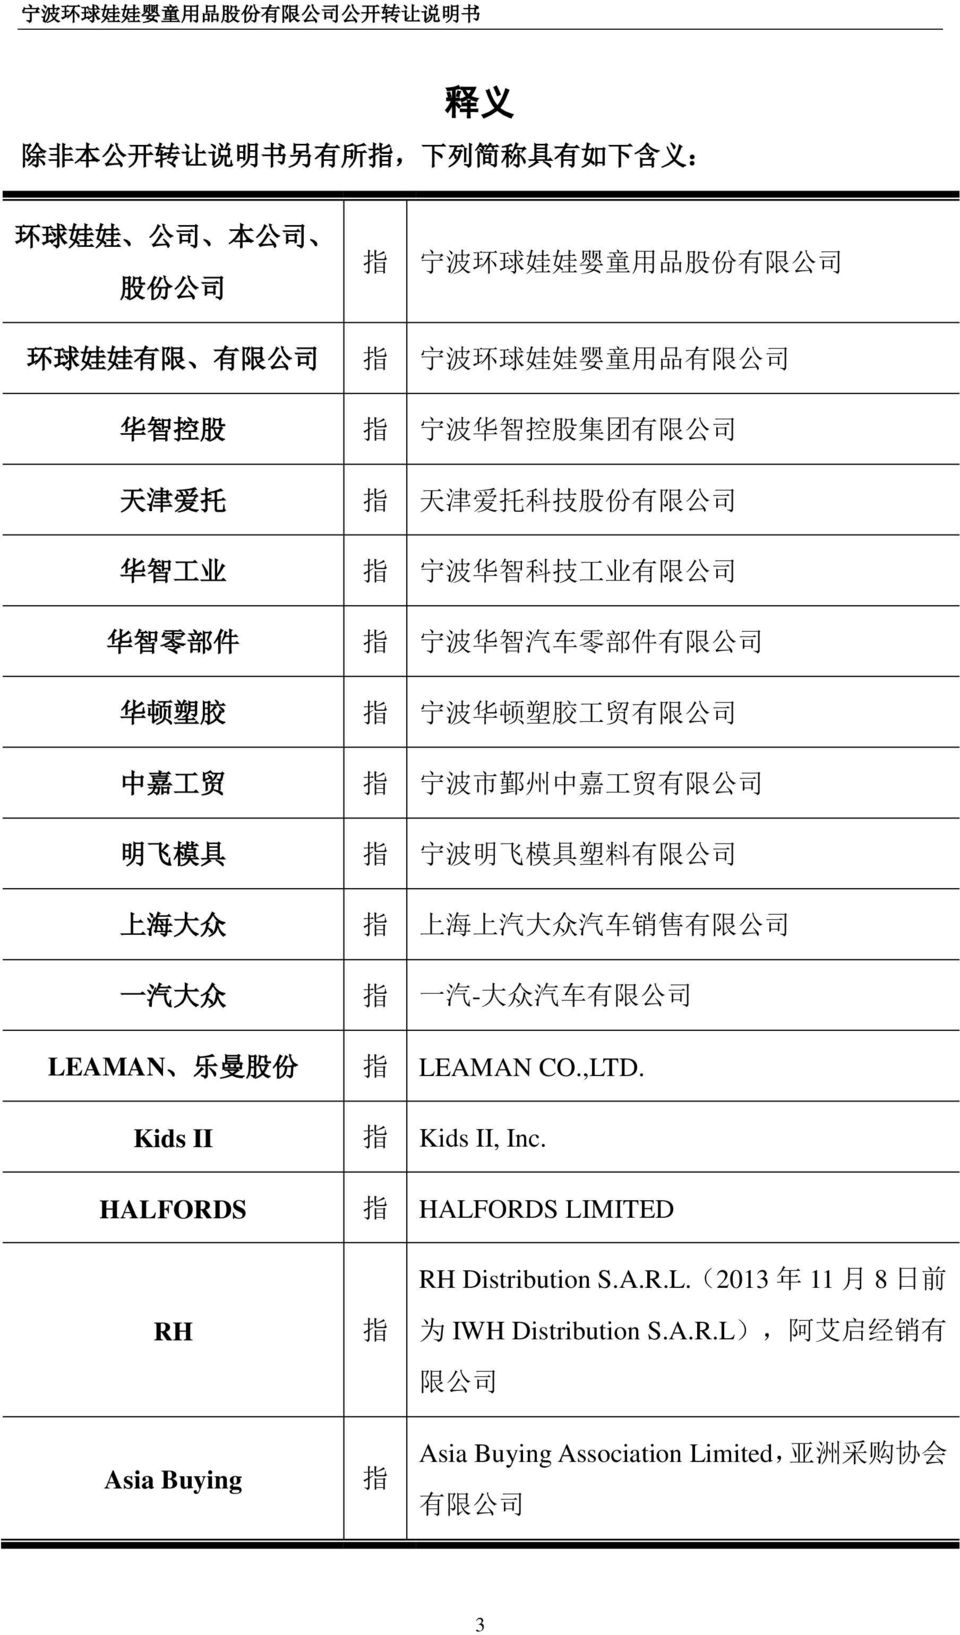 工 贸 有 限 公 司 明 飞 模 具 指 宁 波 明 飞 模 具 塑 料 有 限 公 司 上 海 大 众 指 上 海 上 汽 大 众 汽 车 销 售 有 限 公 司 一 汽 大 众 指 一 汽 - 大 众 汽 车 有 限 公 司 LEAMAN 乐 曼 股 份 指 LEAMAN CO.,LTD. Kids II 指 Kids II, Inc.